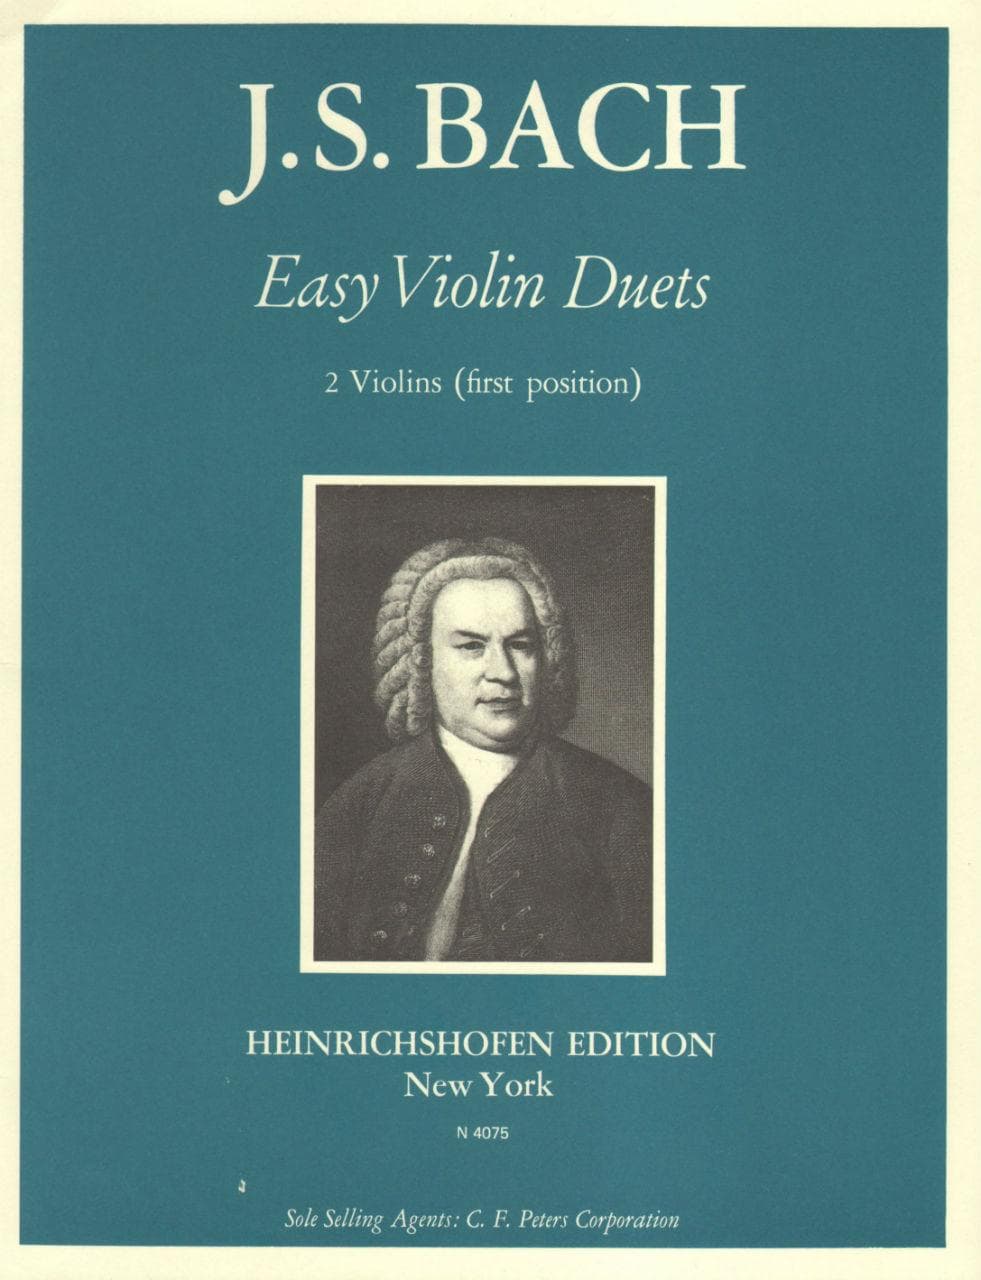 Bach, JS - Easy Violin Duets for Two Violins - Heinrichshofen's Verlag Edition